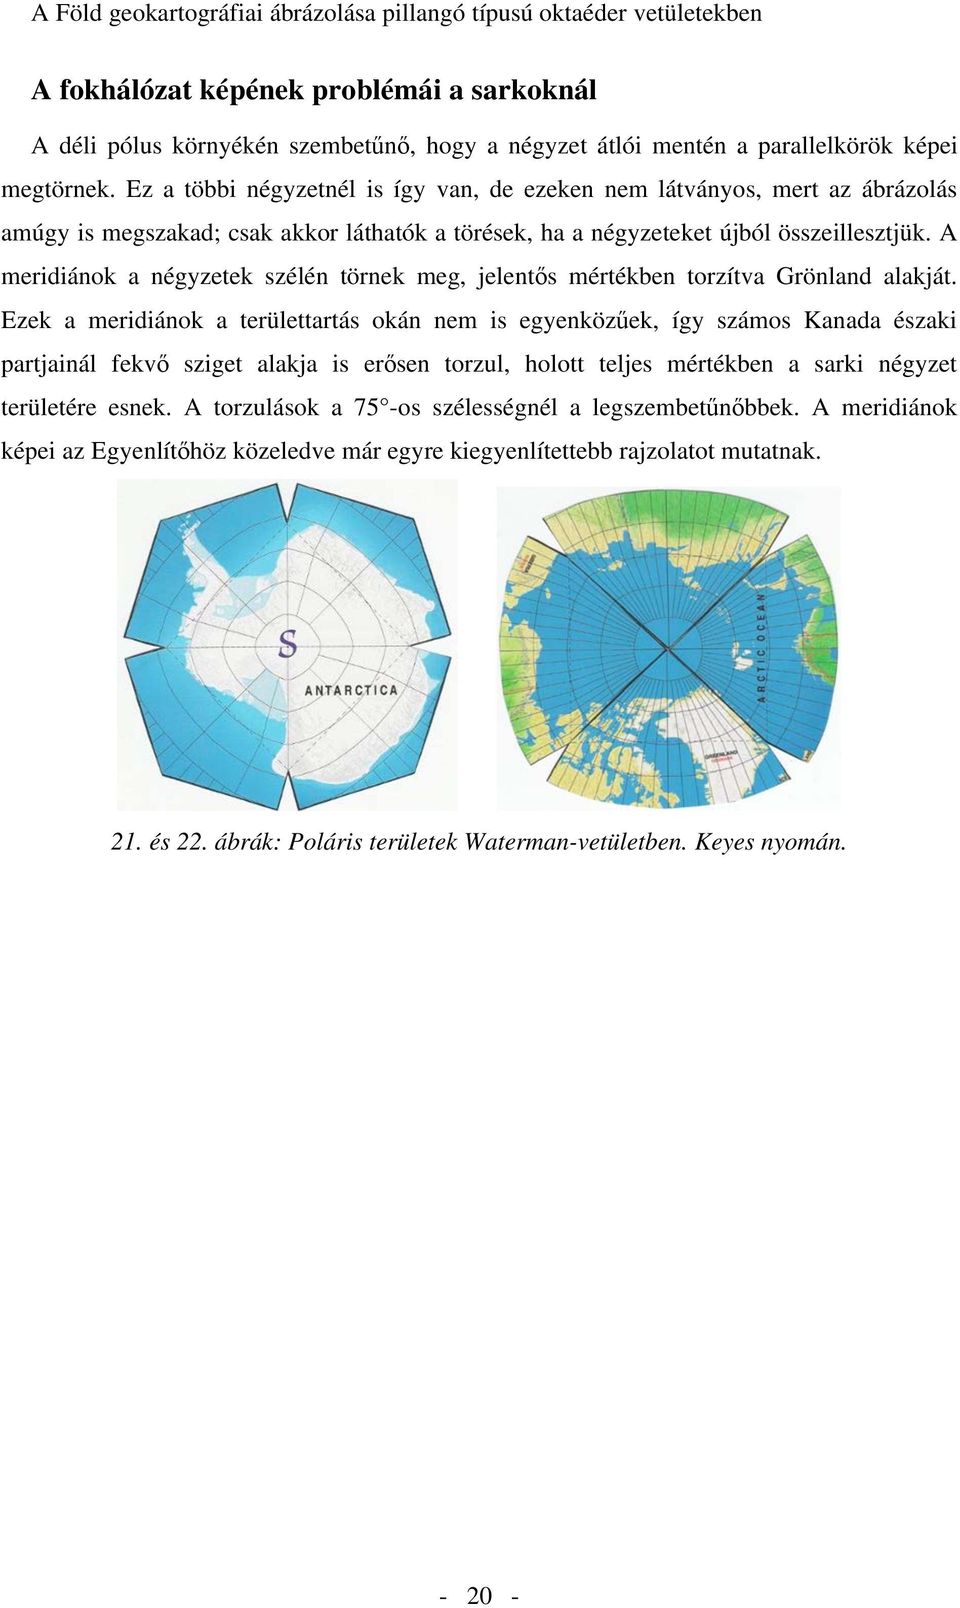 A meridiánok a négyzetek szélén törnek meg, jelent s mértékben torzítva Grönland alakját.